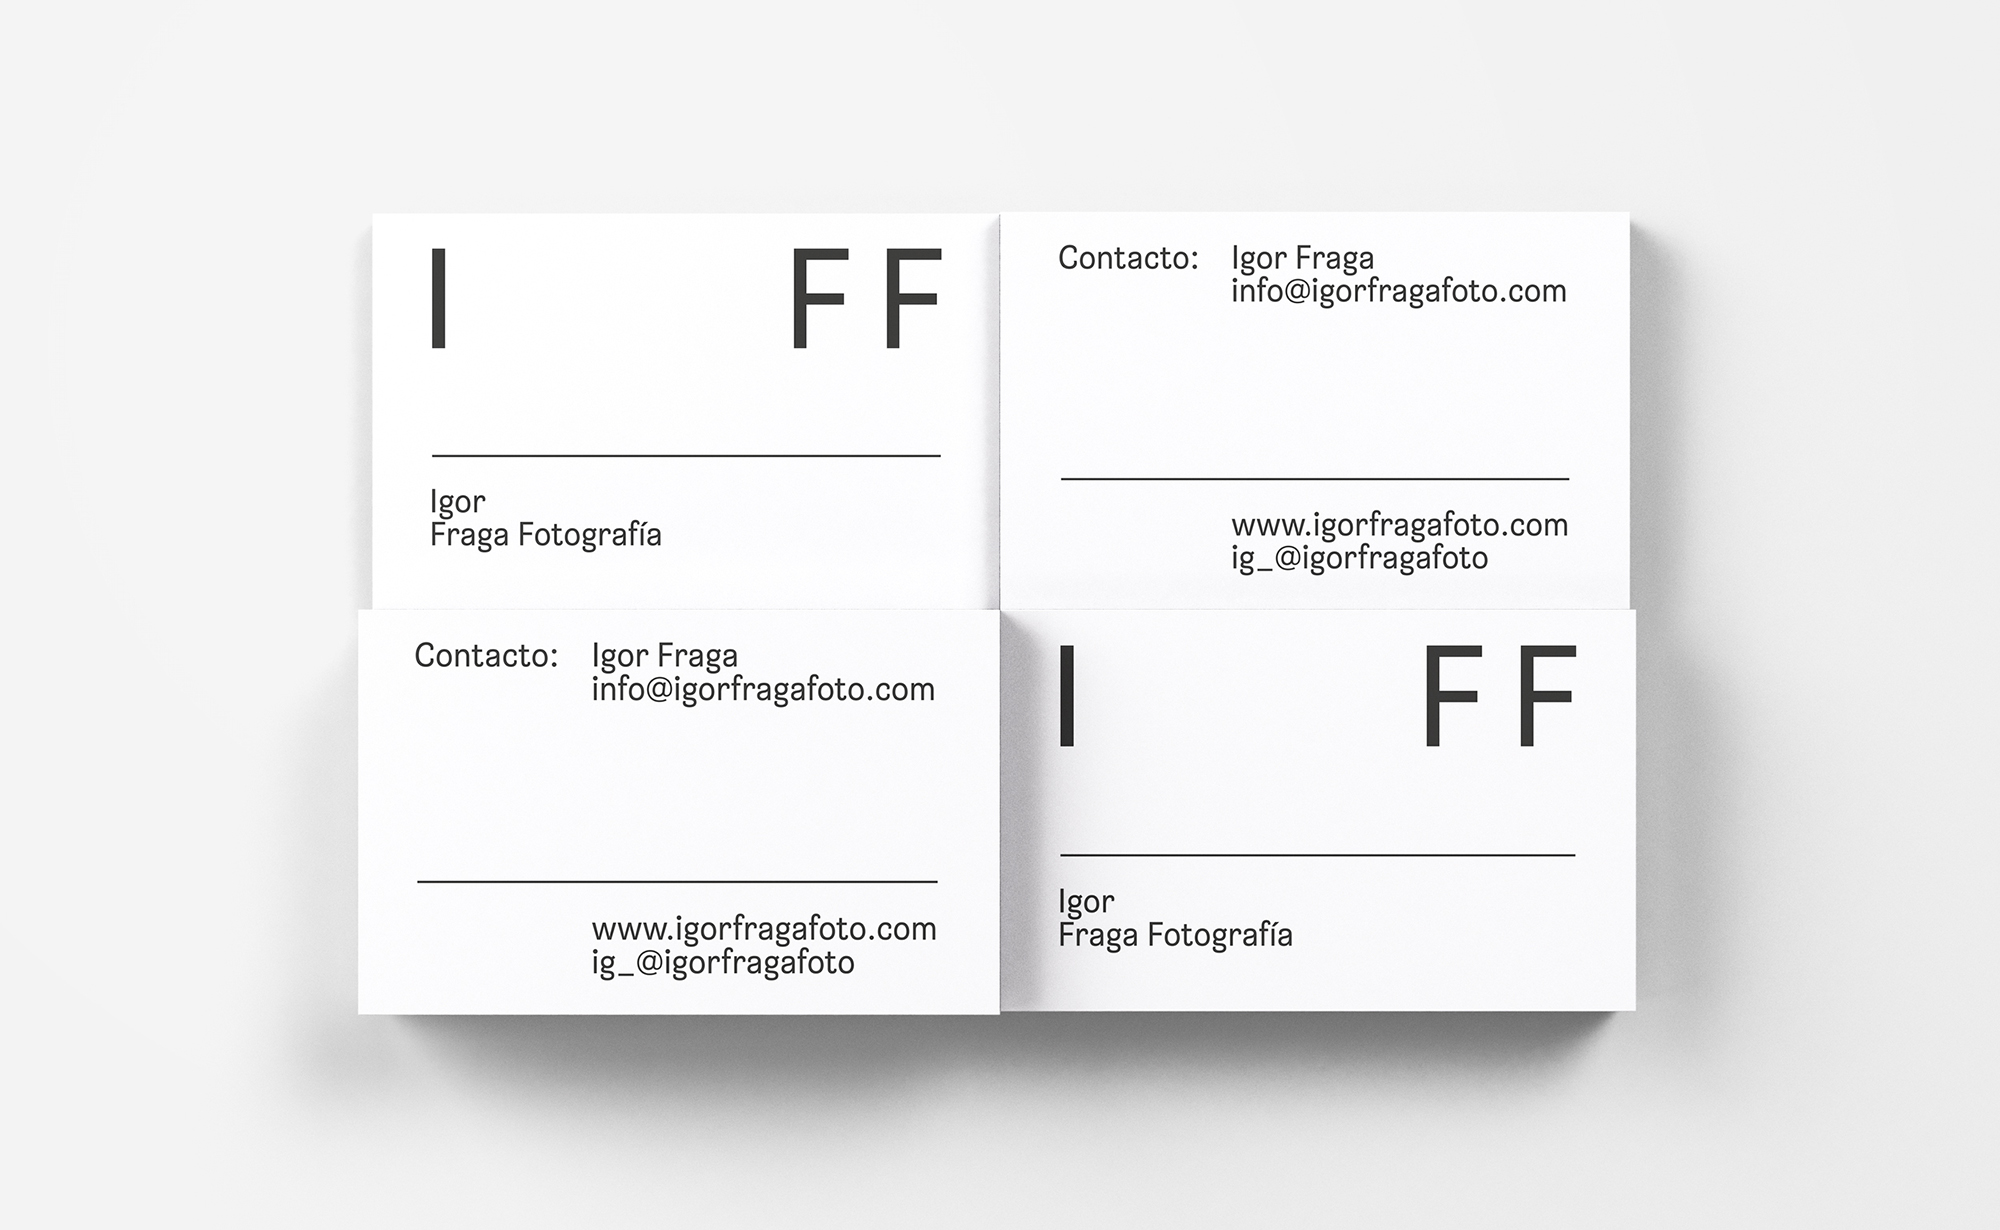 Diseño y desarrollo de identidad visual corporativa para Igor Fraga Fotografía. Tarjetas de visita.